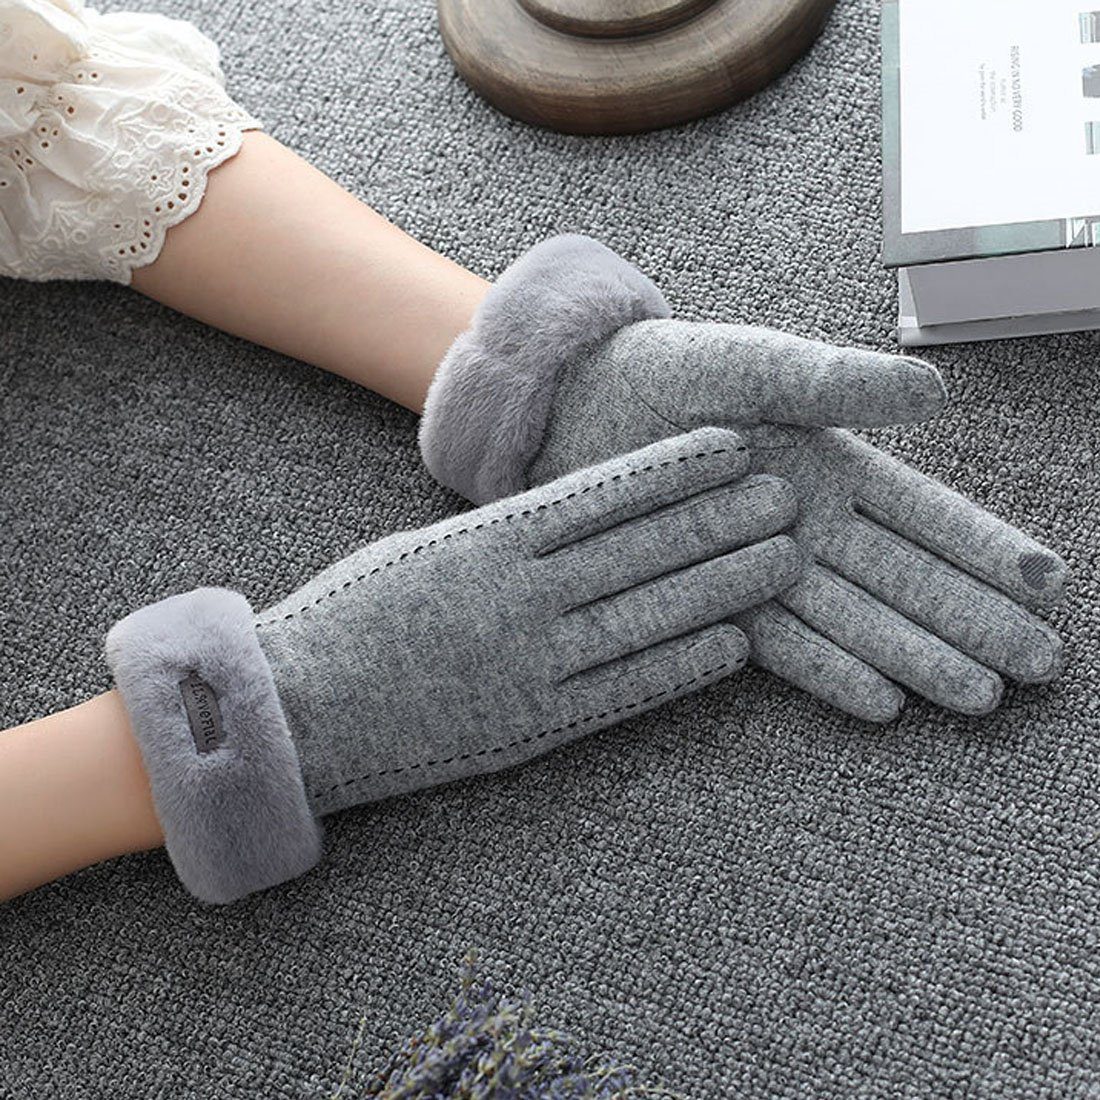 DÖRÖY Fleecehandschuhe Damen Winter Touchscreen Cashmere Grau Warme Reithandschuhe,Faux Handschuhe